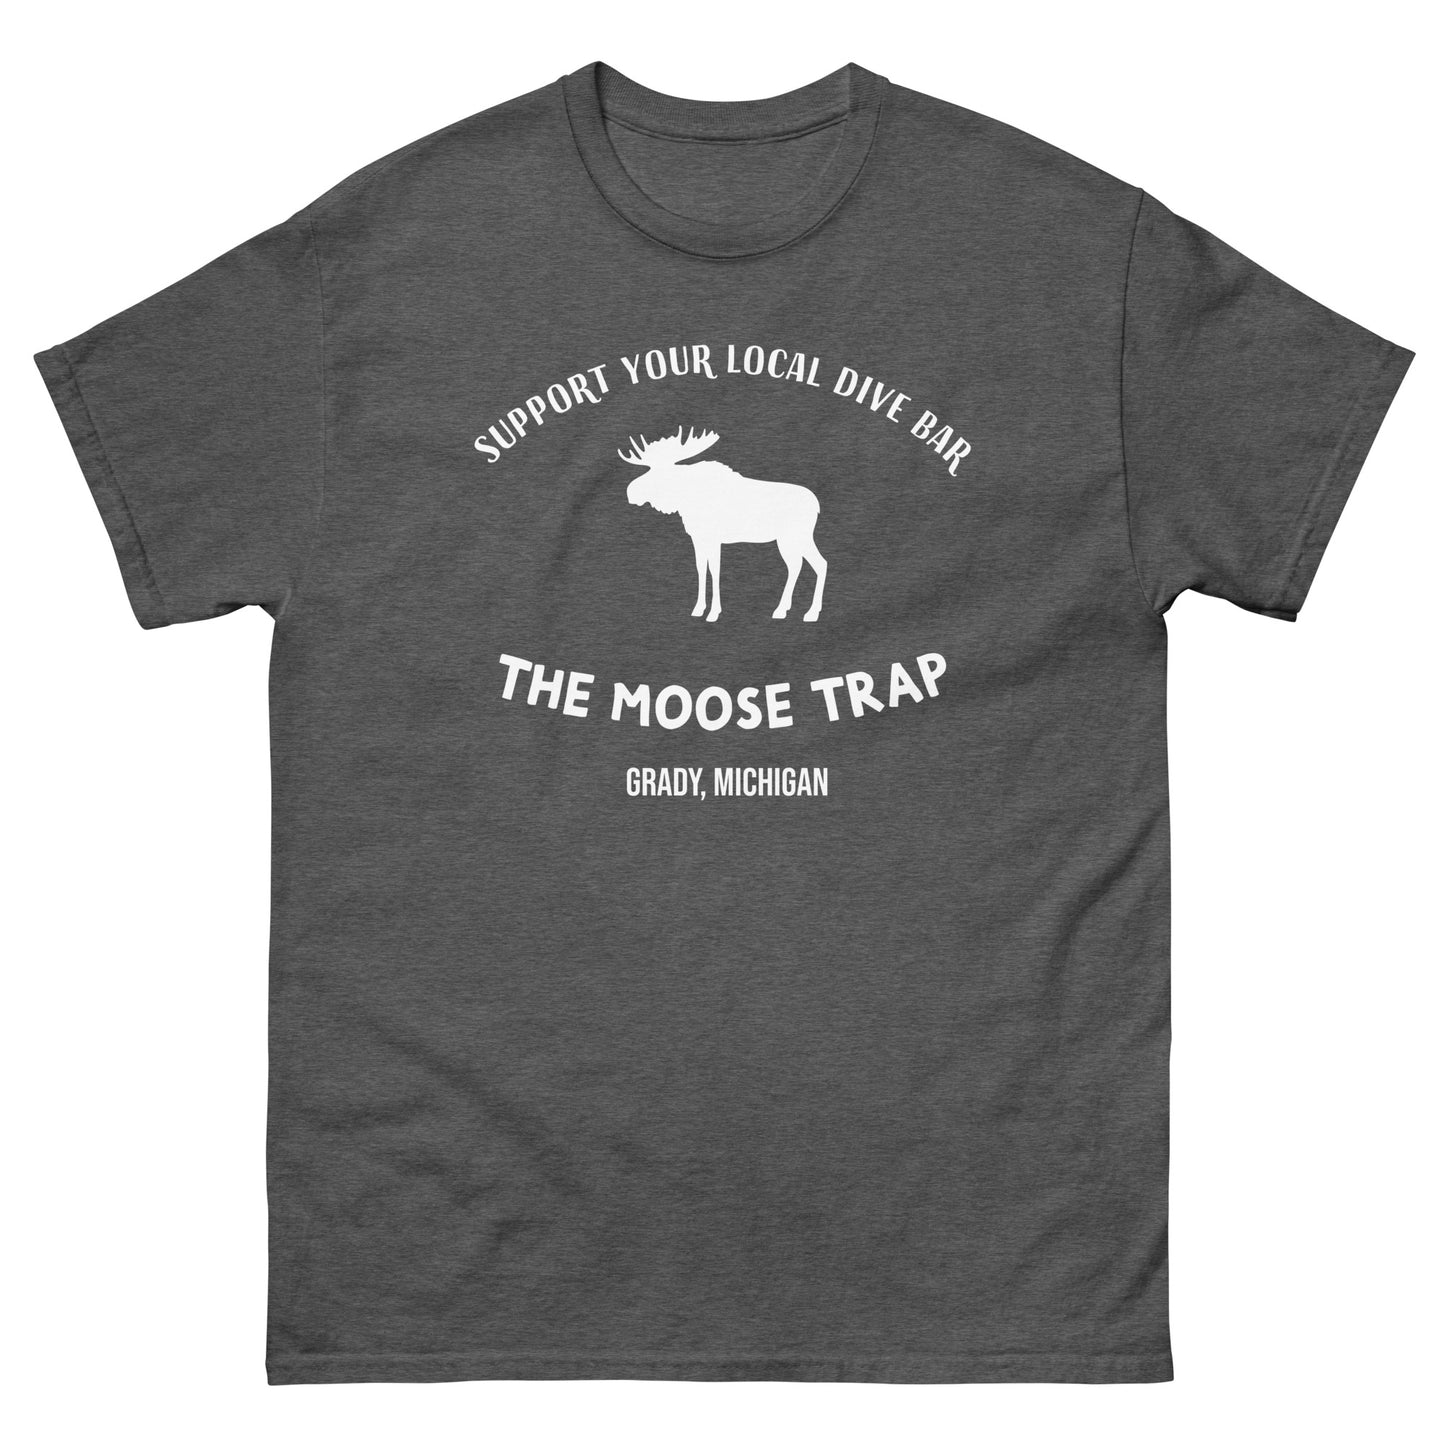 Unisex Moose Trap classic tee